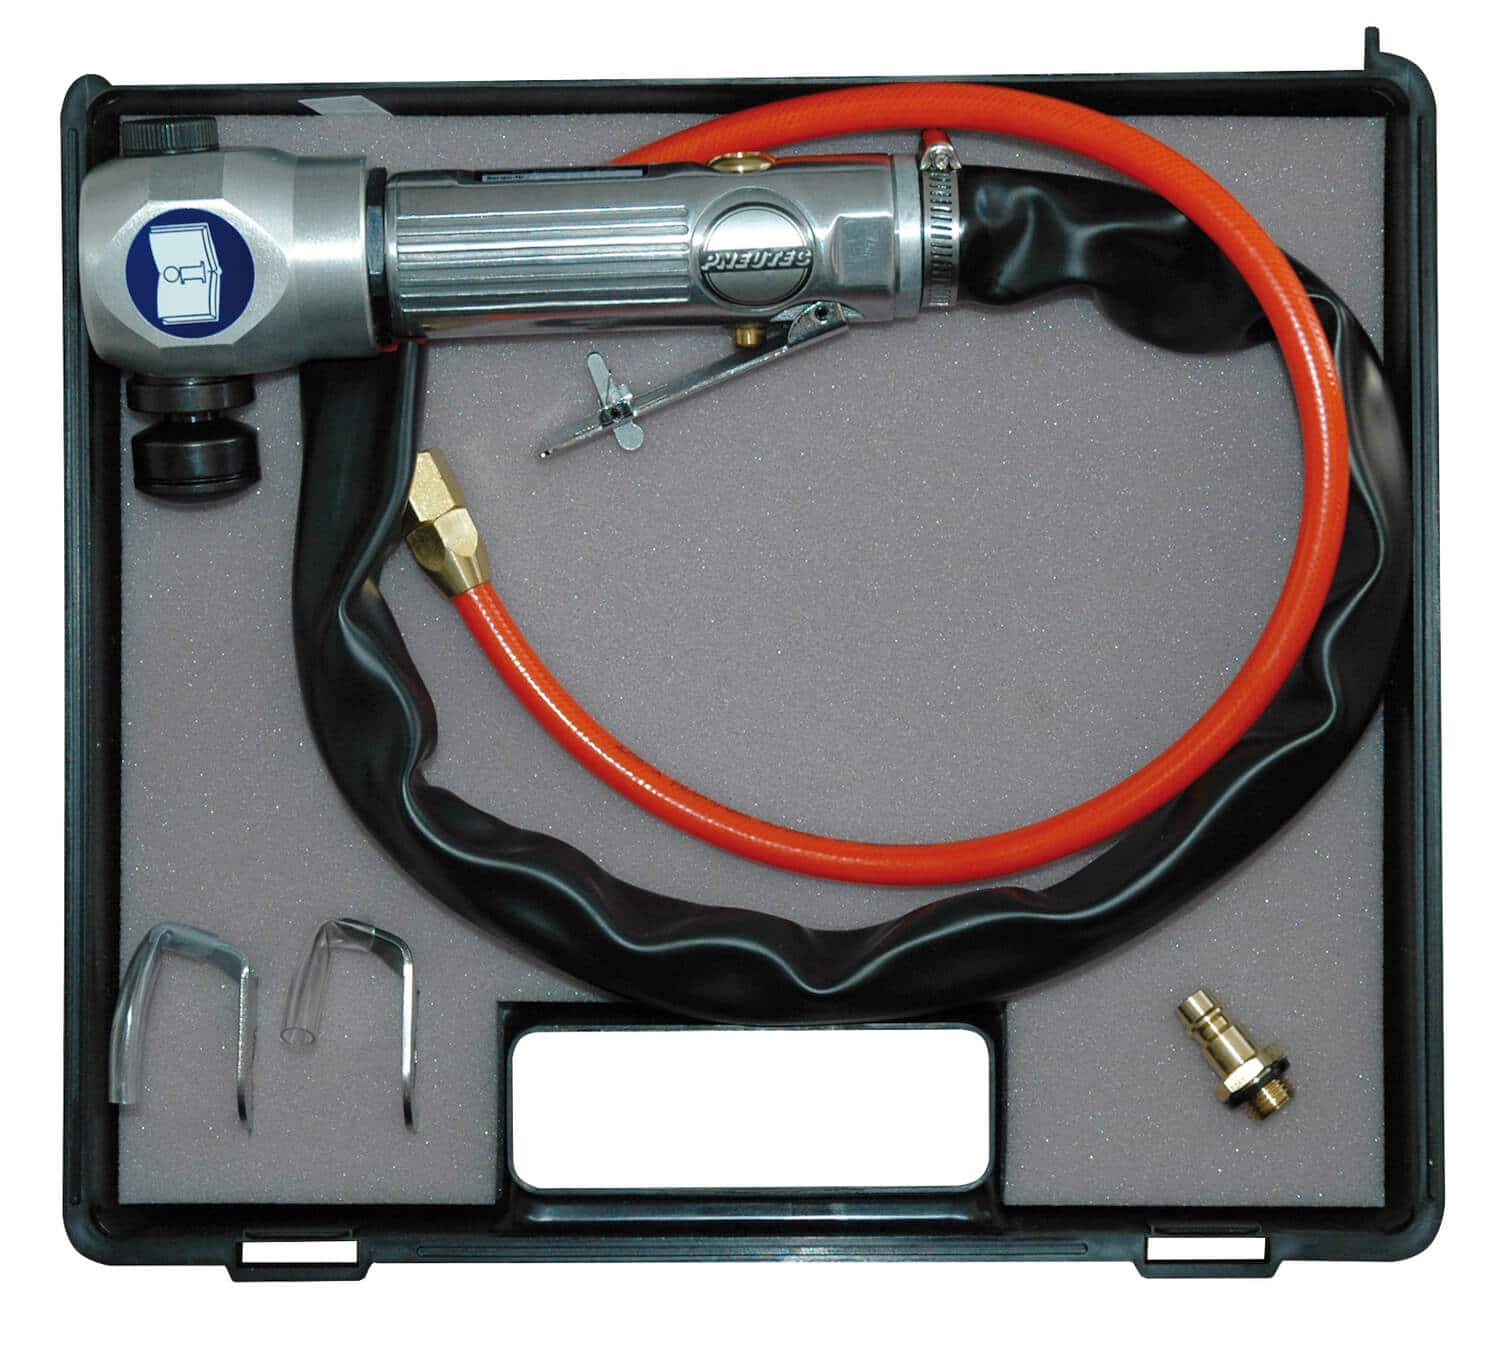 Autoscheibenaustrenner-Set im praktischen Kunststoffkoffer mit Modell UT 7 DHS 1 und 2 Universalschneidmessern